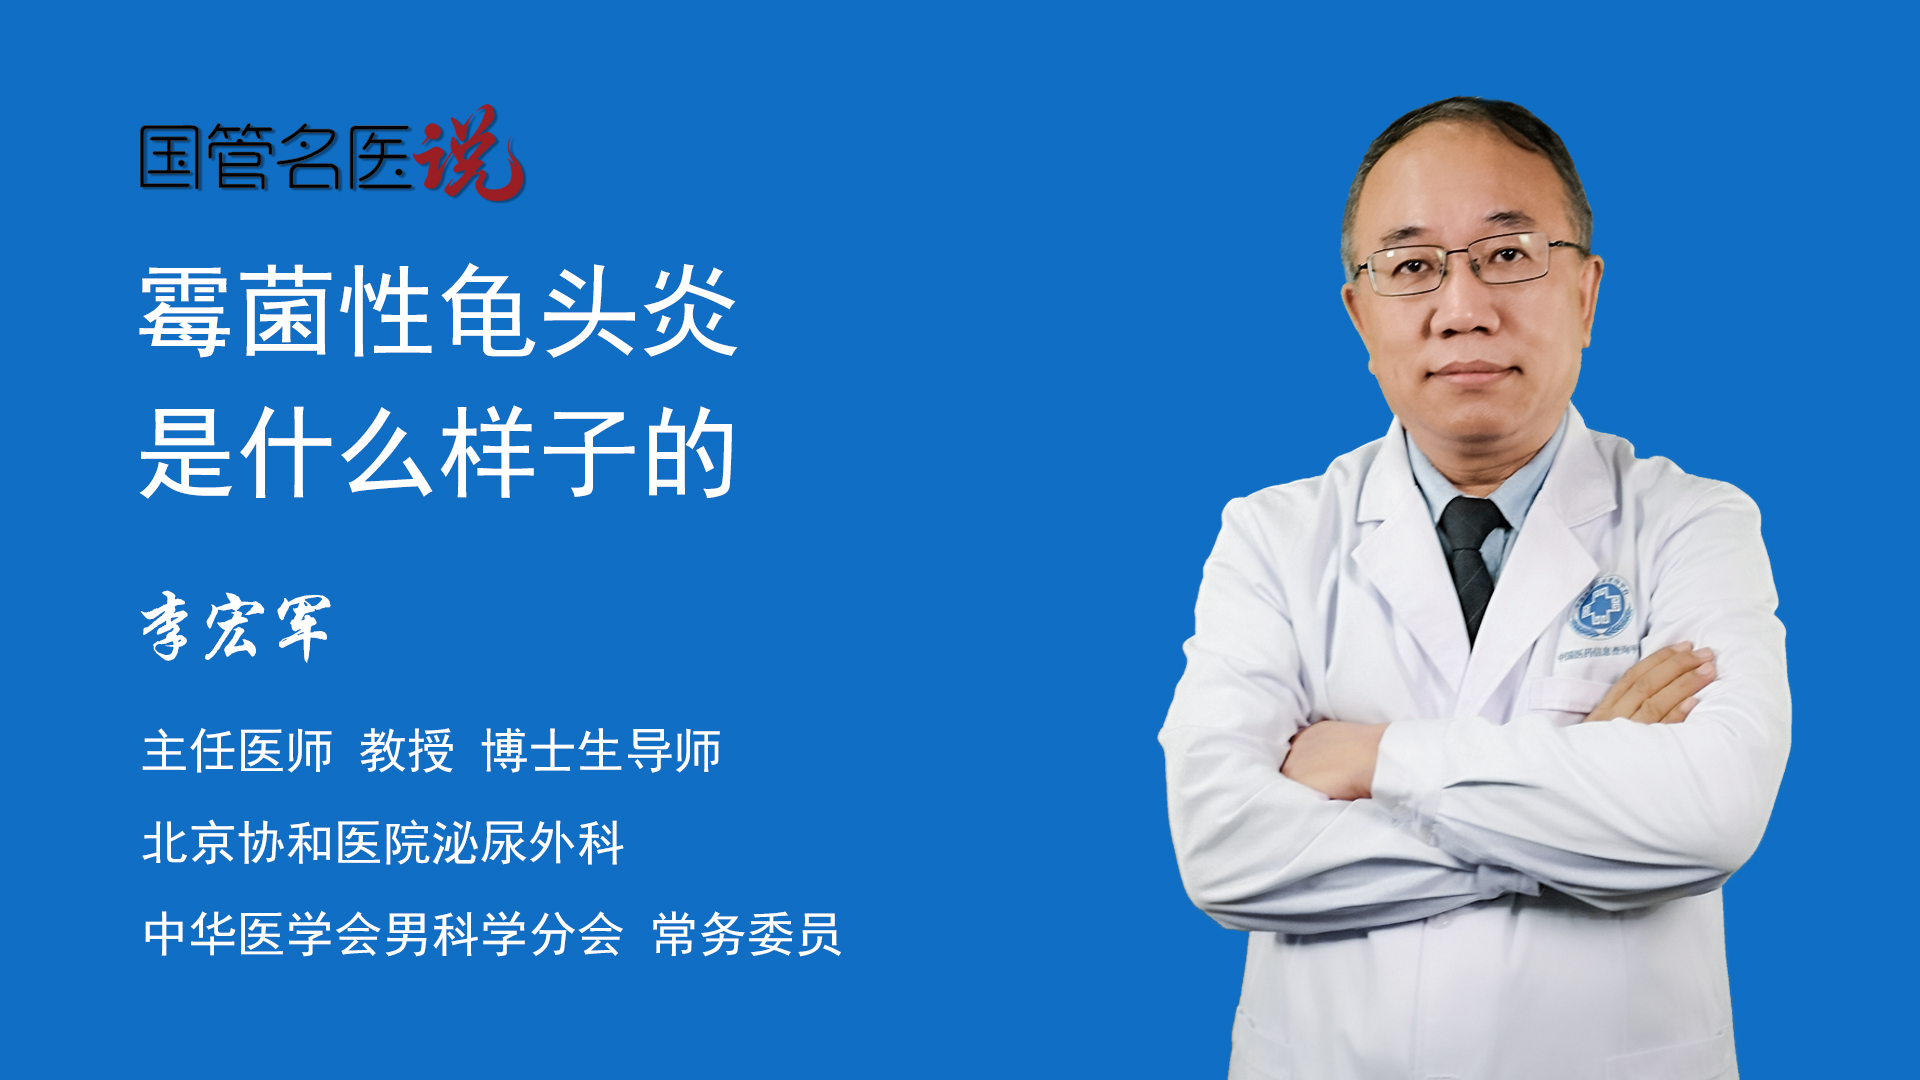 博士生导师泌尿外科知名专家北京协和医院霉菌性龟头炎是指真菌感染